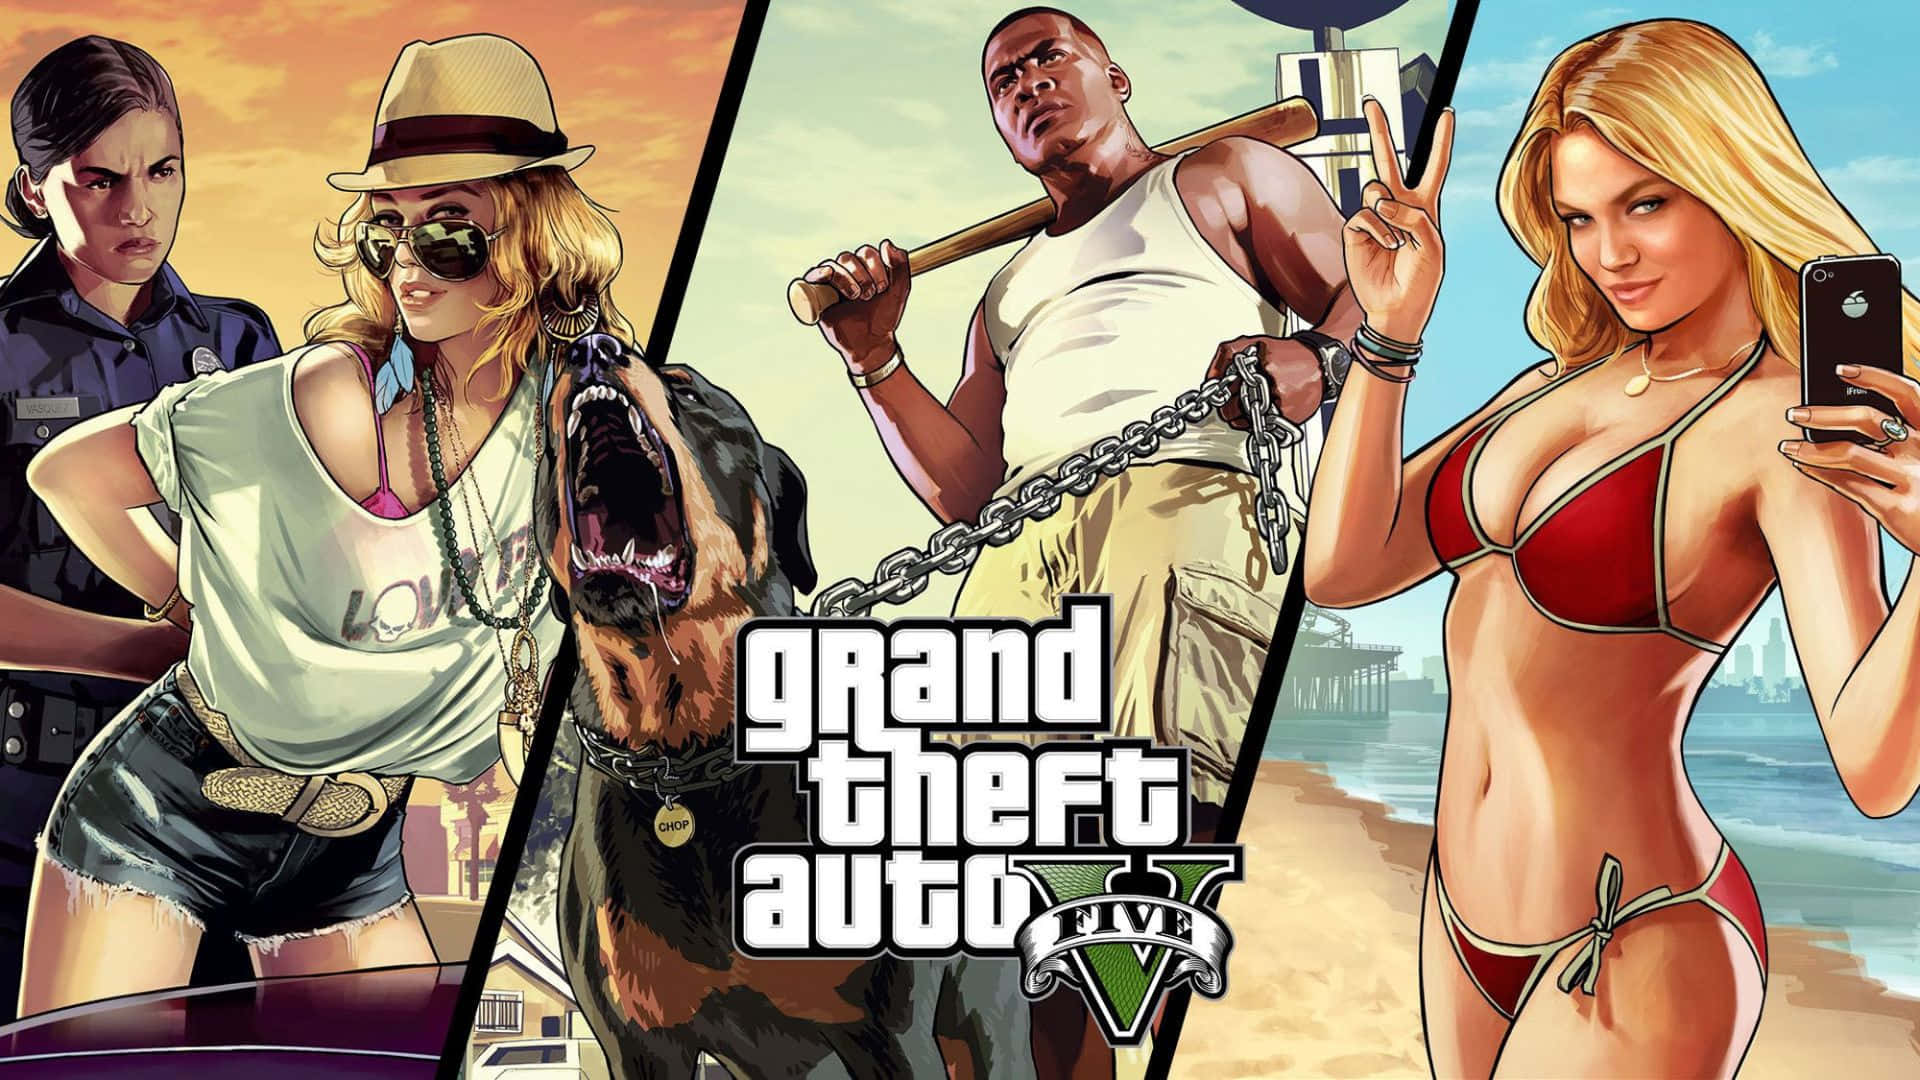 Faiun Giro Emozionante E Selvaggio Nel Mondo Di Grand Theft Auto